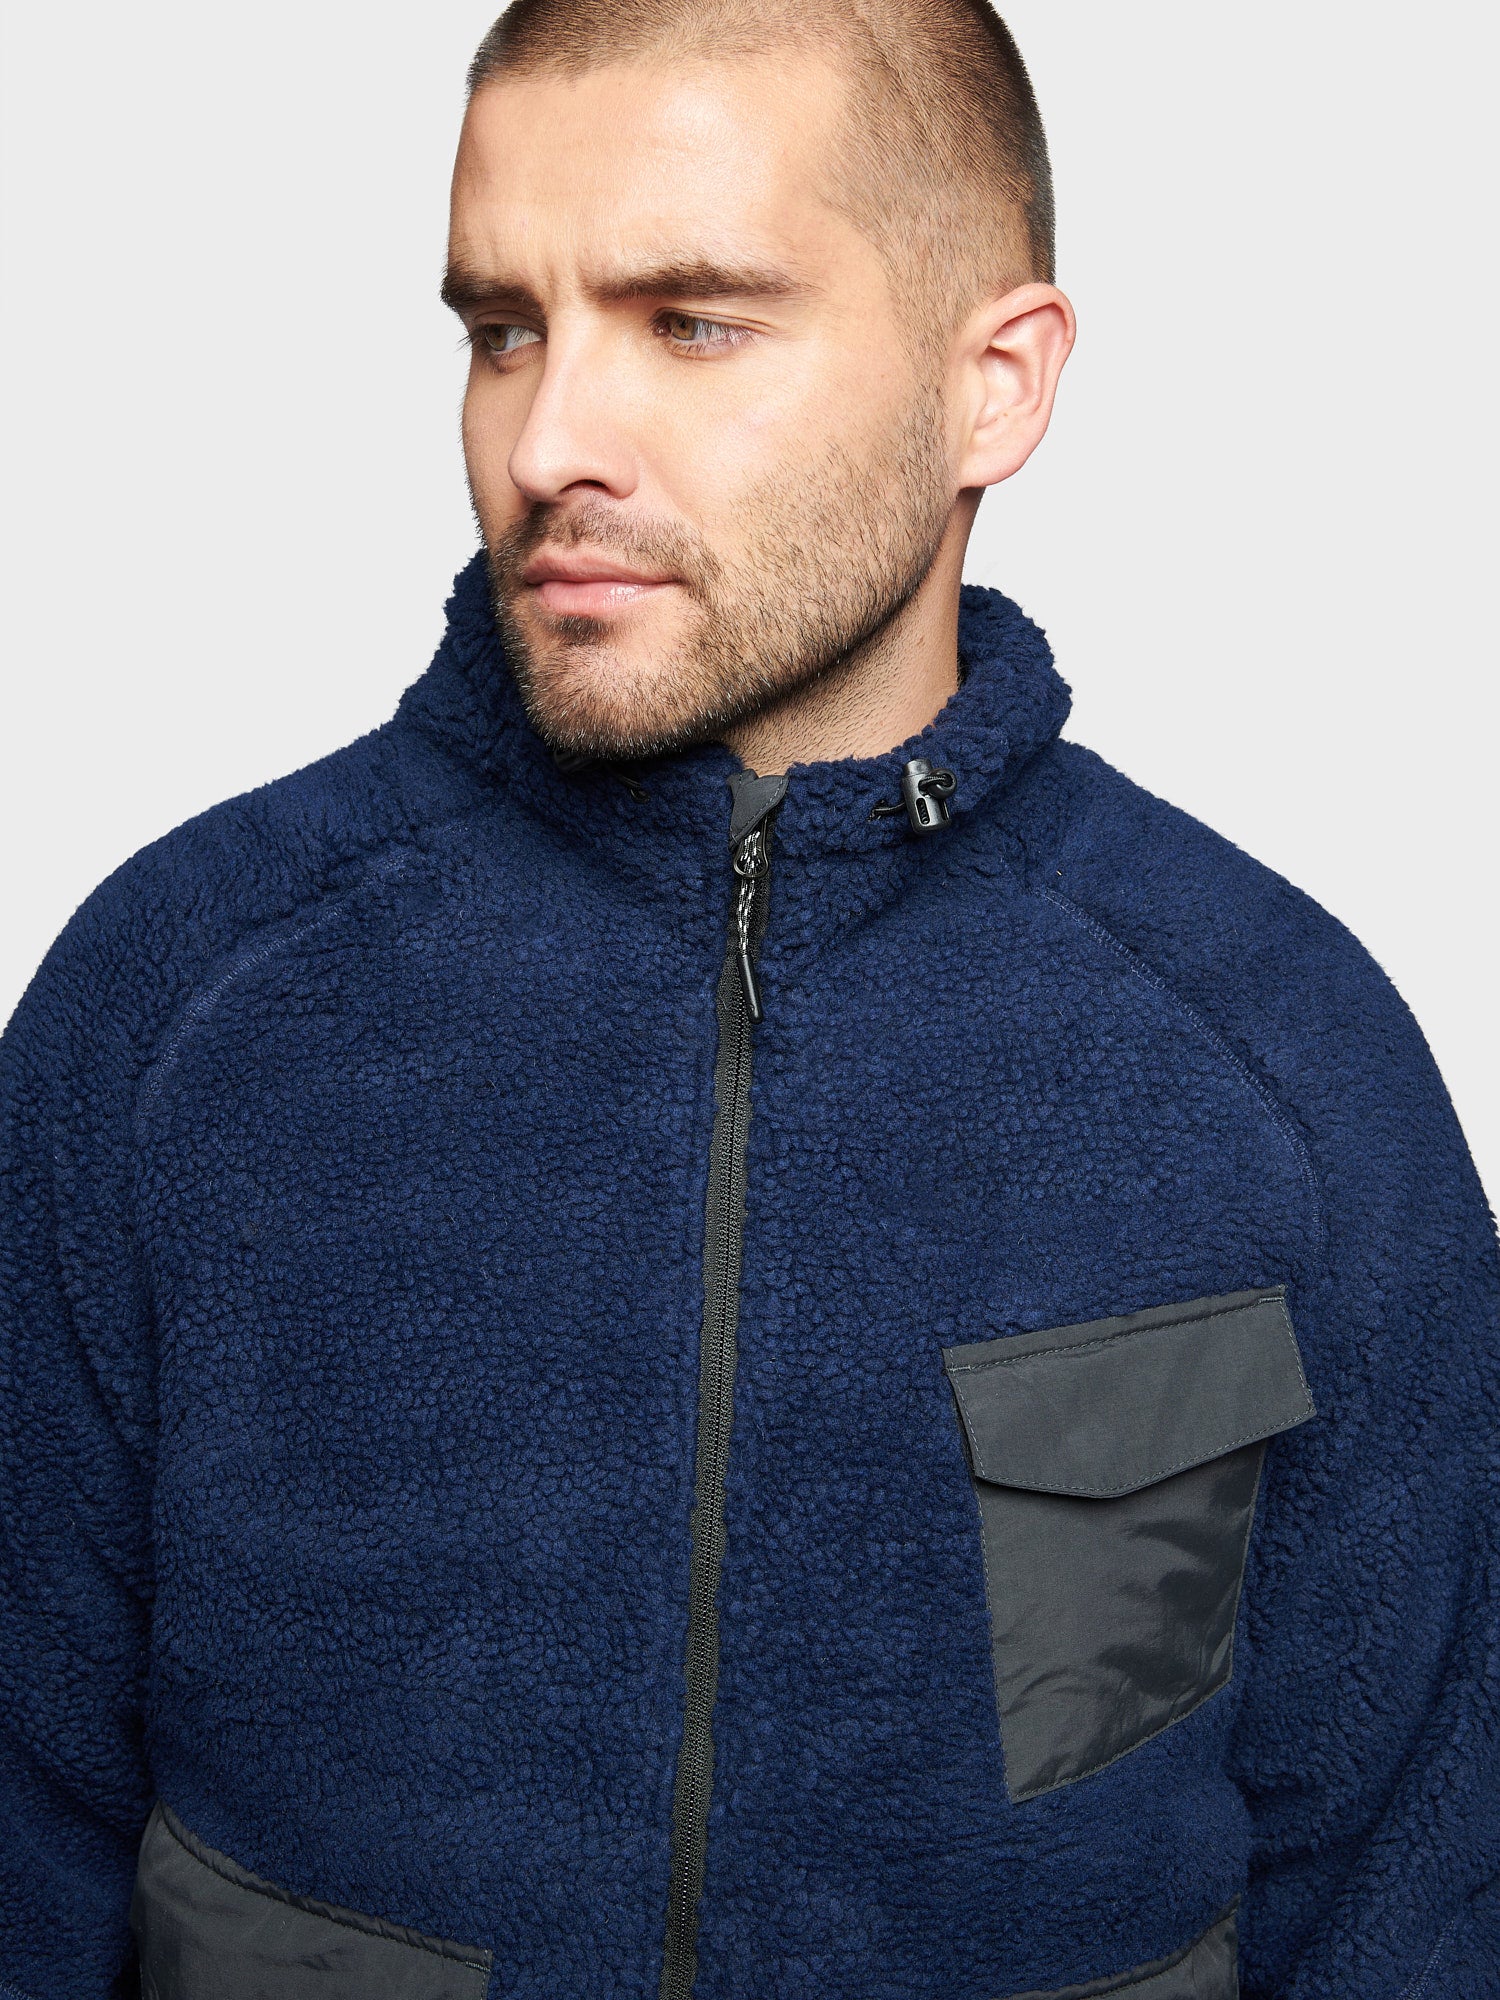 P Bear Angled Pocket Borg Fleece Jacket in Navy Blue